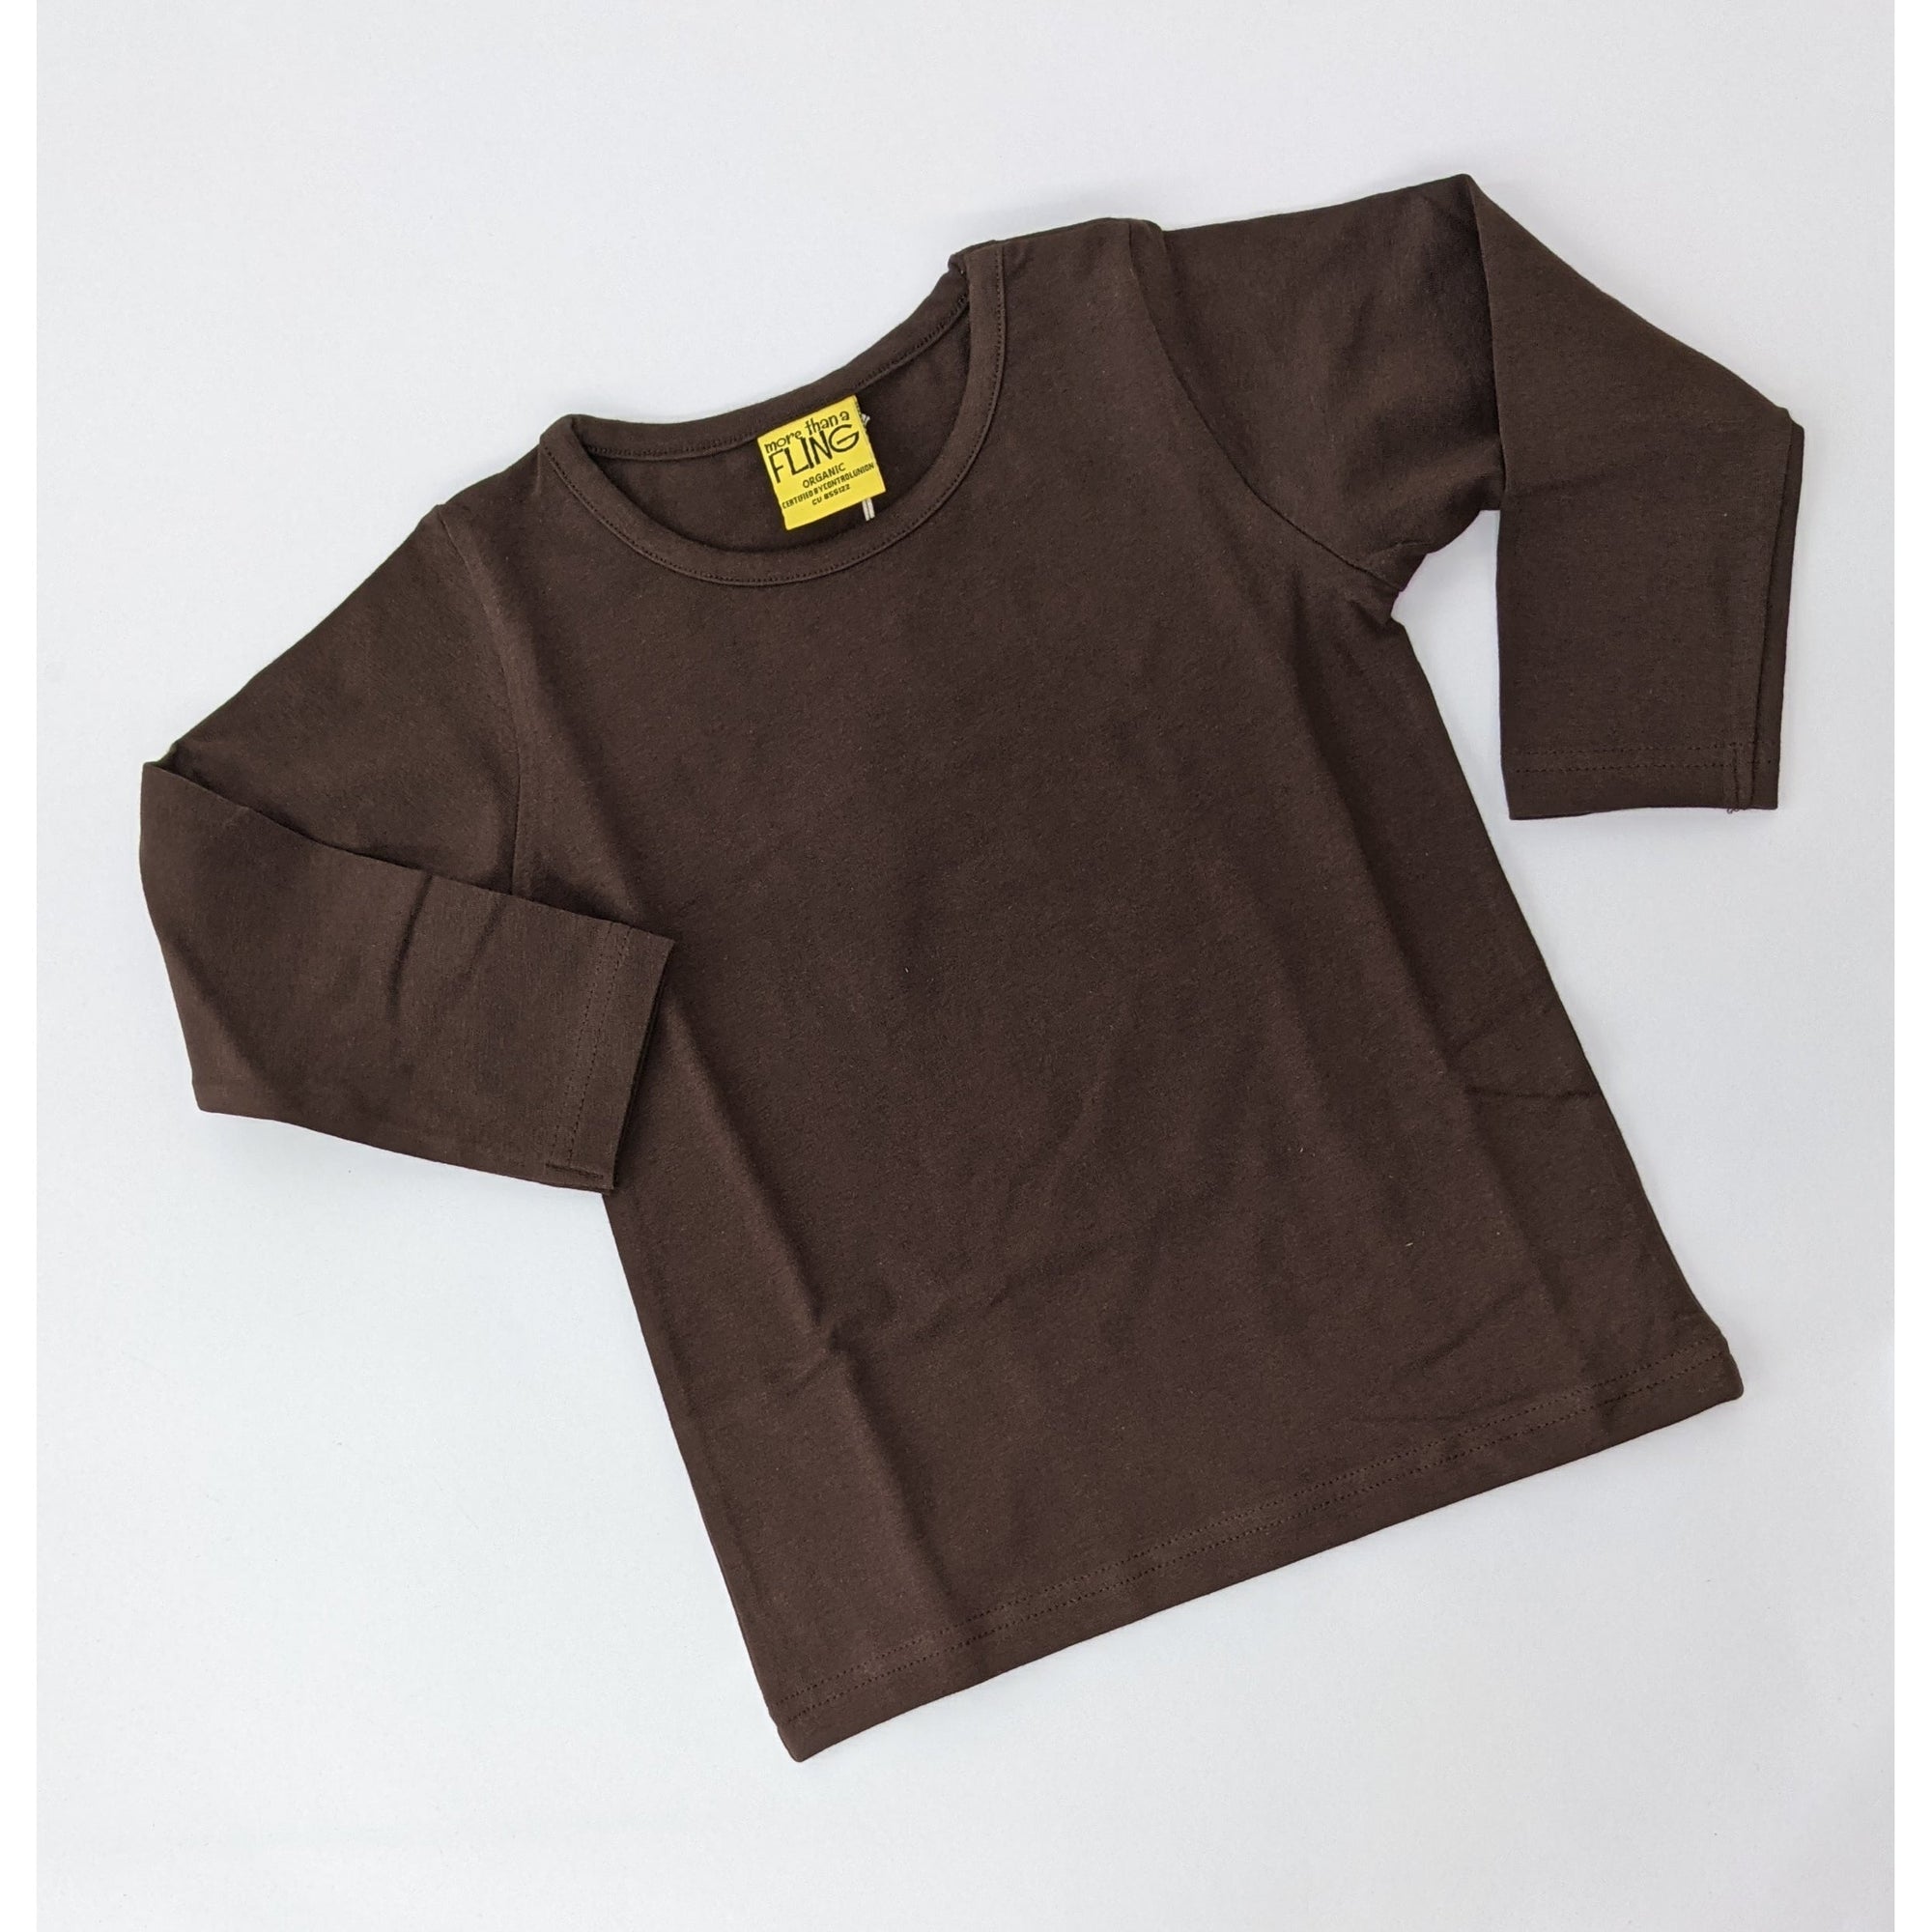 Java Long Sleeve Shirt - 1 Left Size 6-12 months-More Than A Fling-Modern Rascals